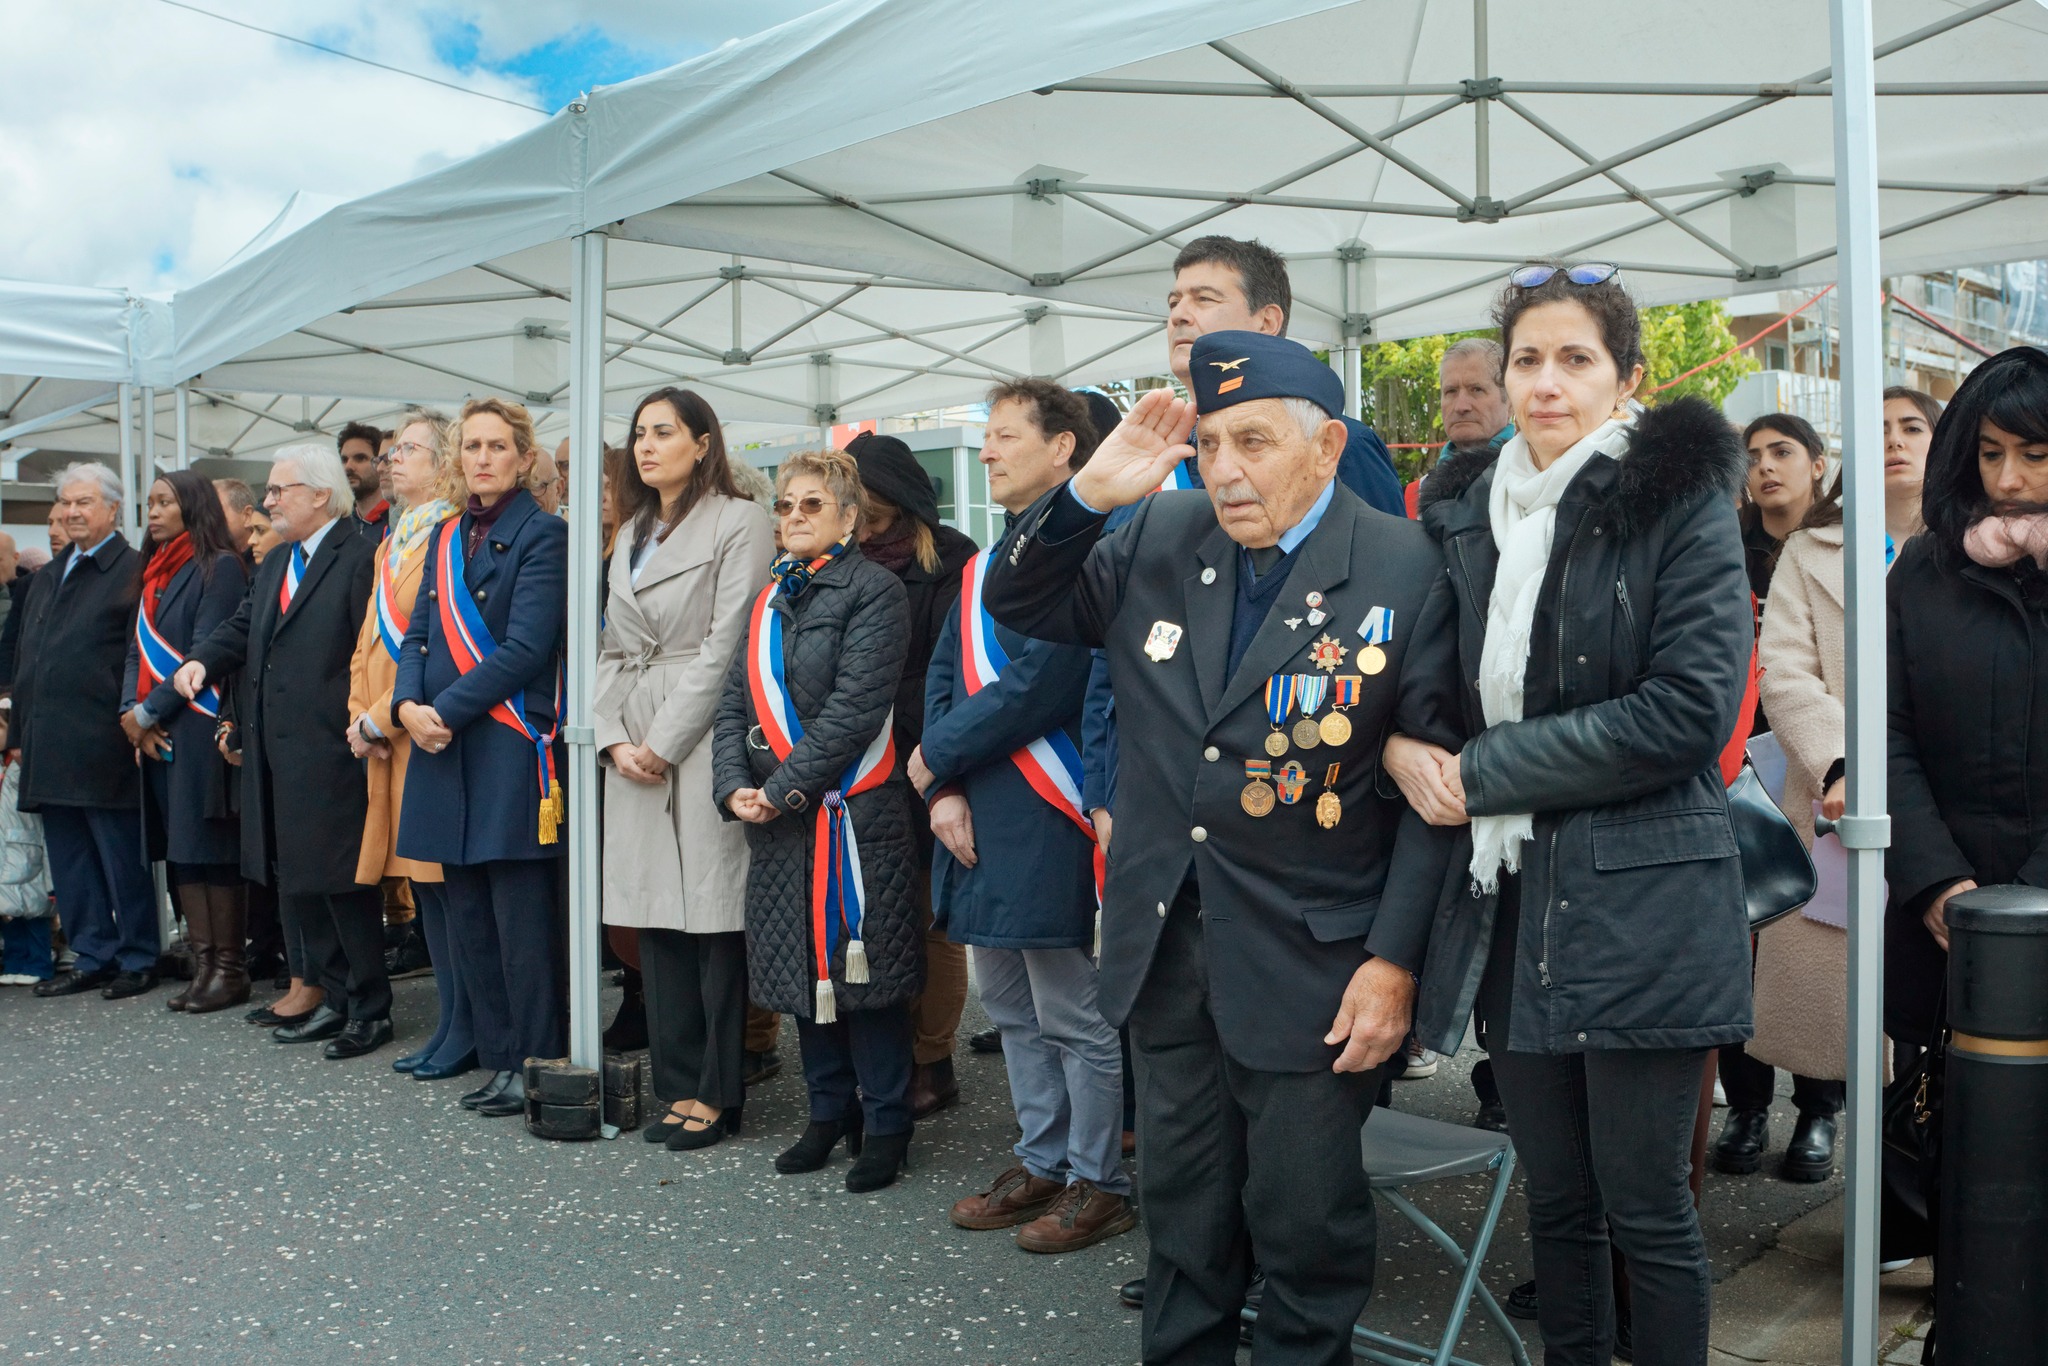 Հայոց ցեղասպանության 109-րդ տարելիցին նվիրված արարողություն՝ Ֆրանսիայի Շավիլ քաղաքում